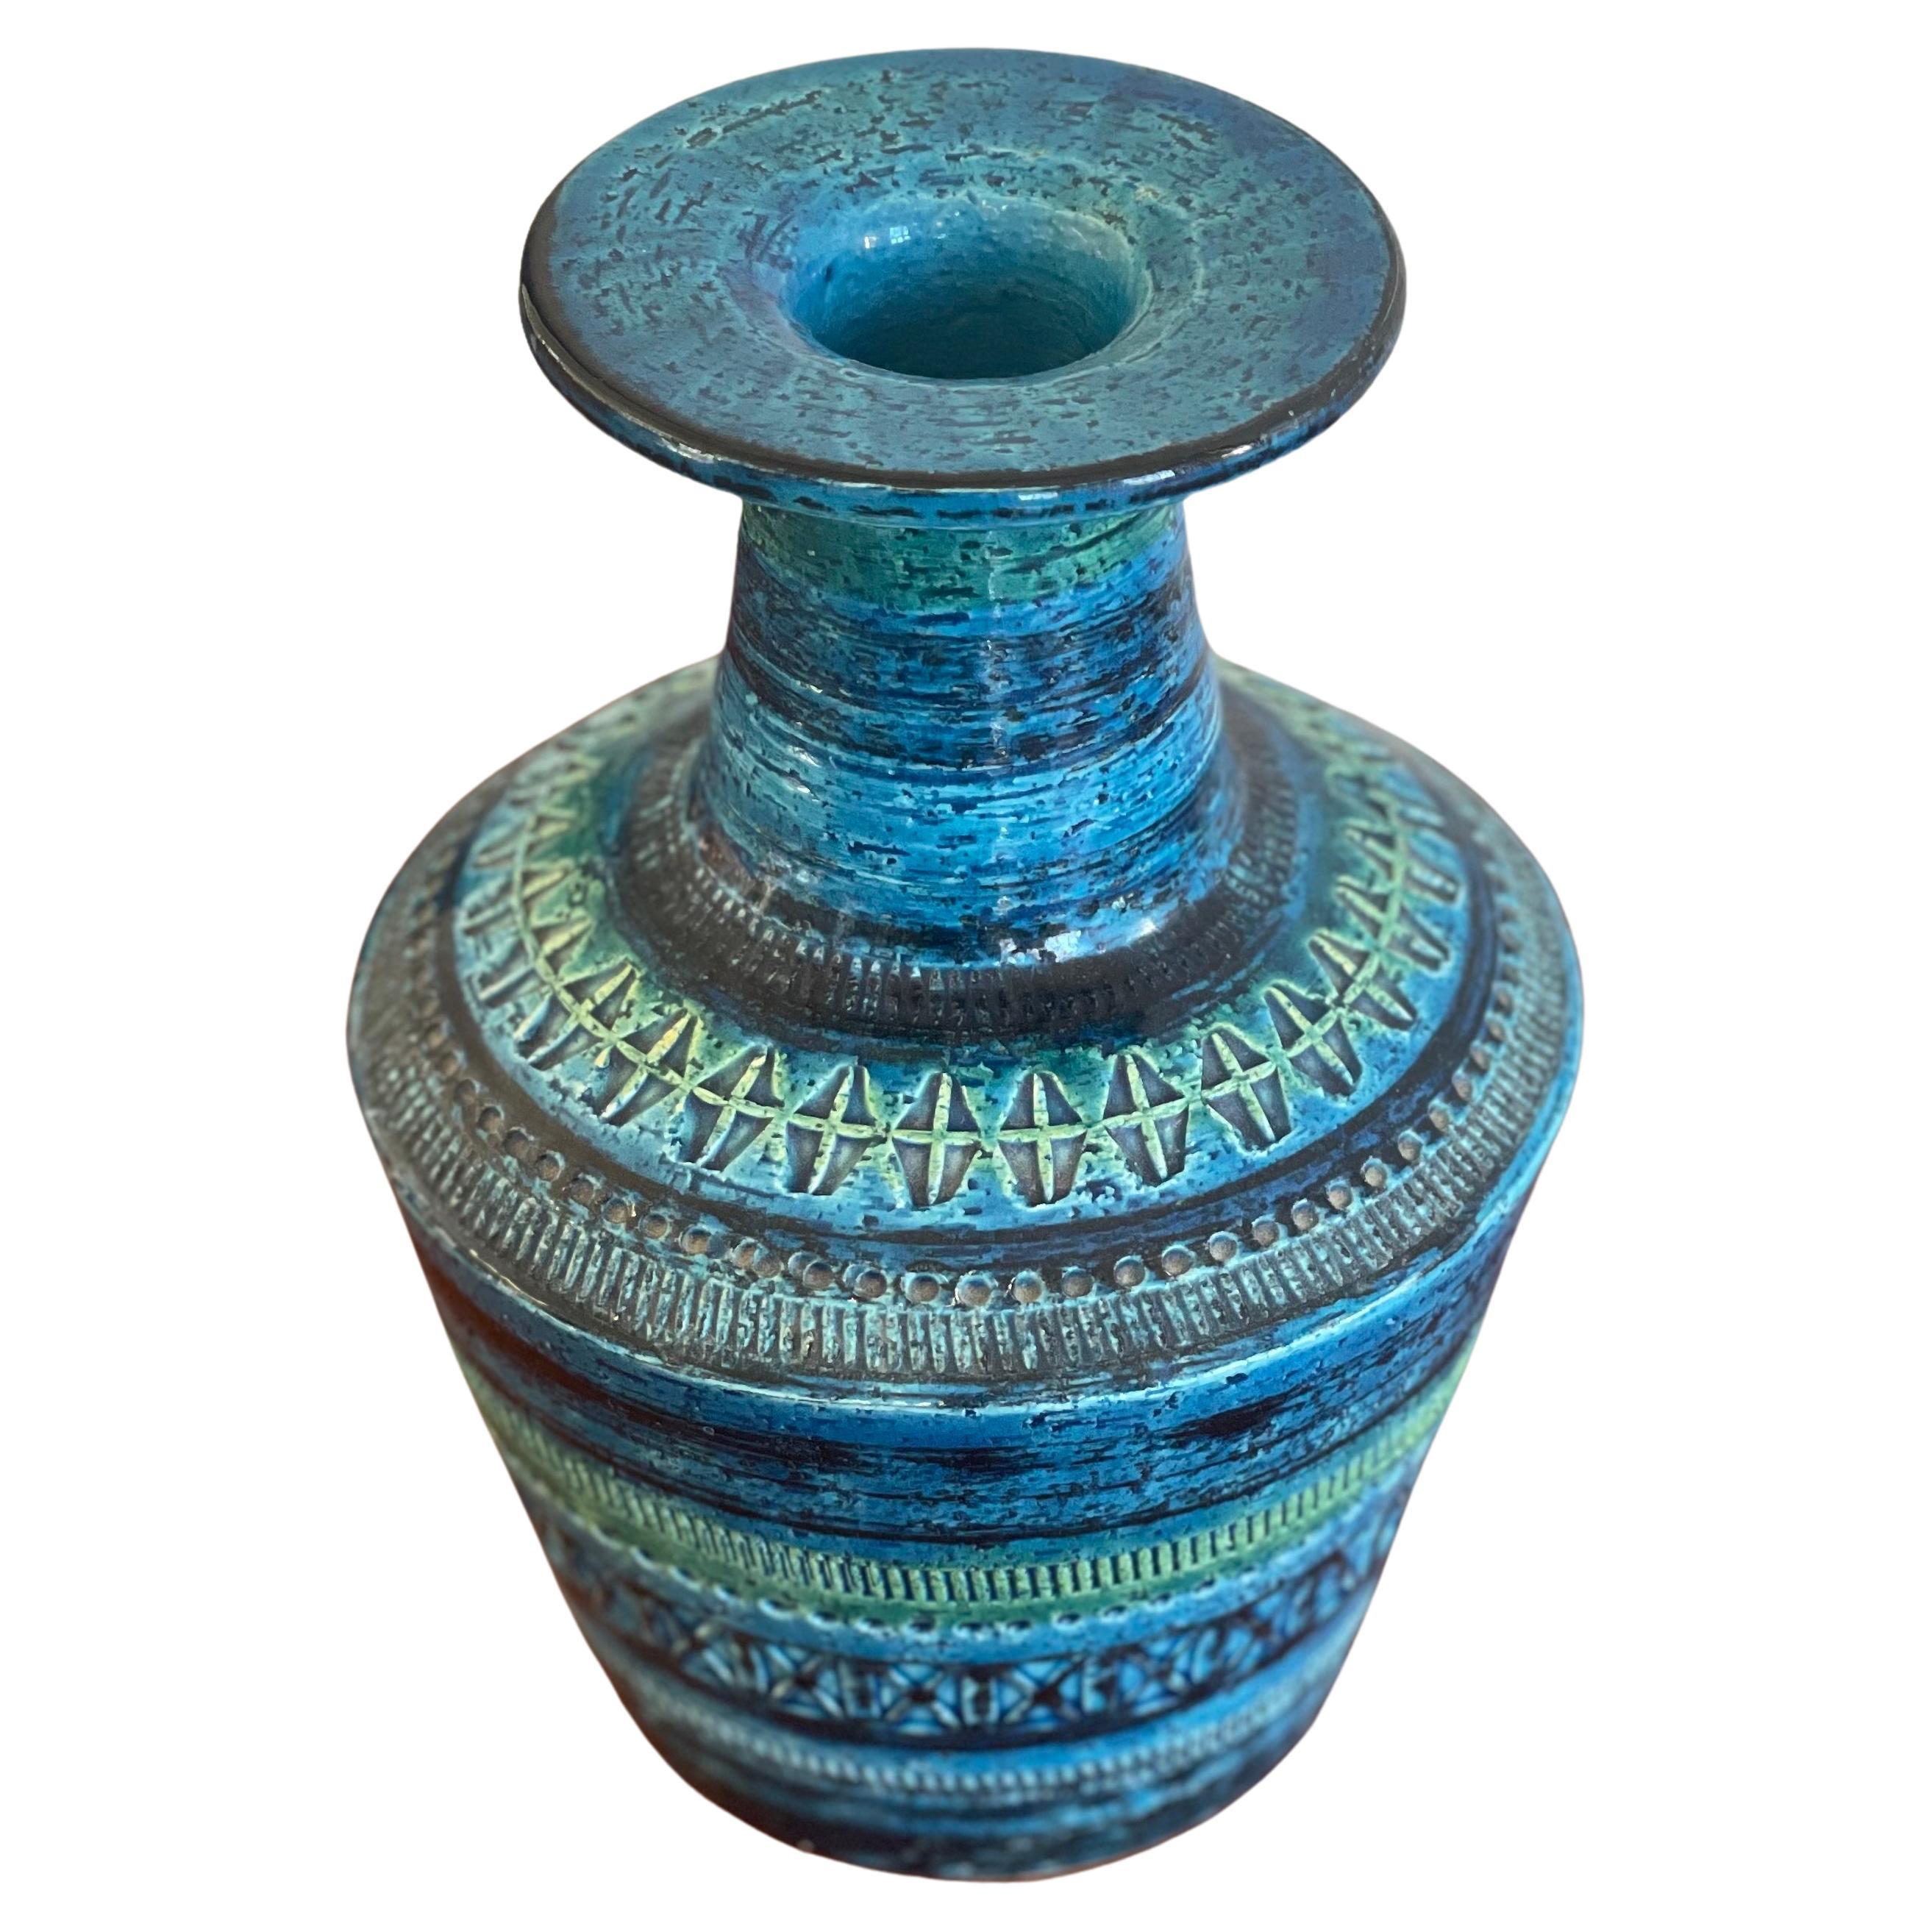 Aldo Londi 'Remini Blu' Vase for Bitossi